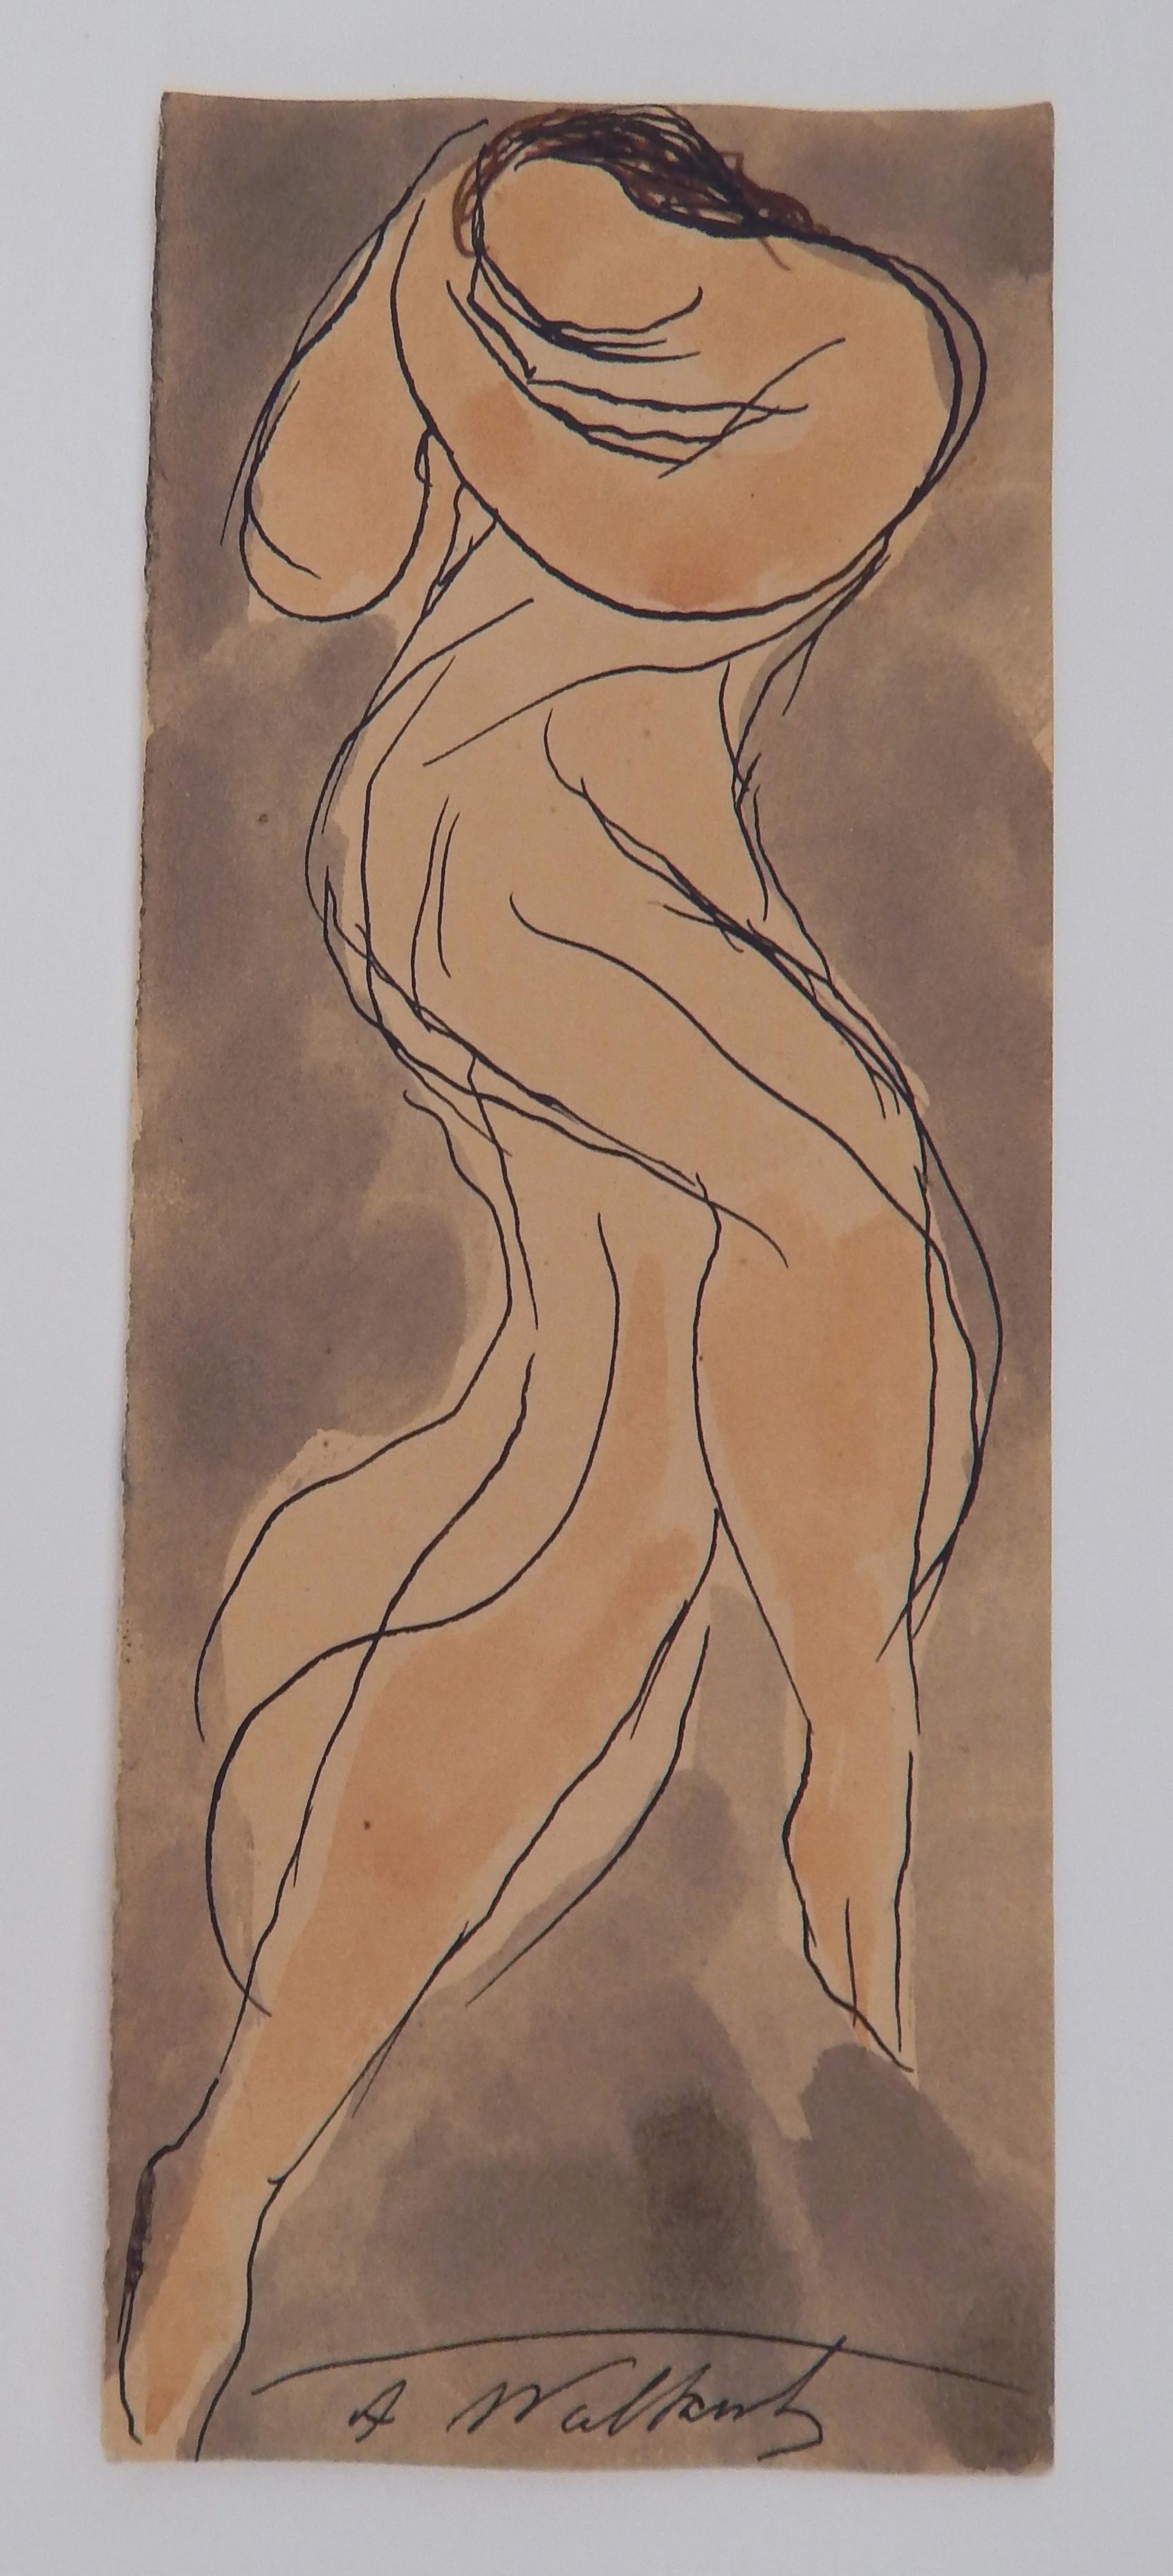 Plume et encre originales avec aquarelle du moderniste américain Abraham Walkowitz (1878-1965)
Il représente l'un de ses sujets favoris, Isadora Duncan, la 